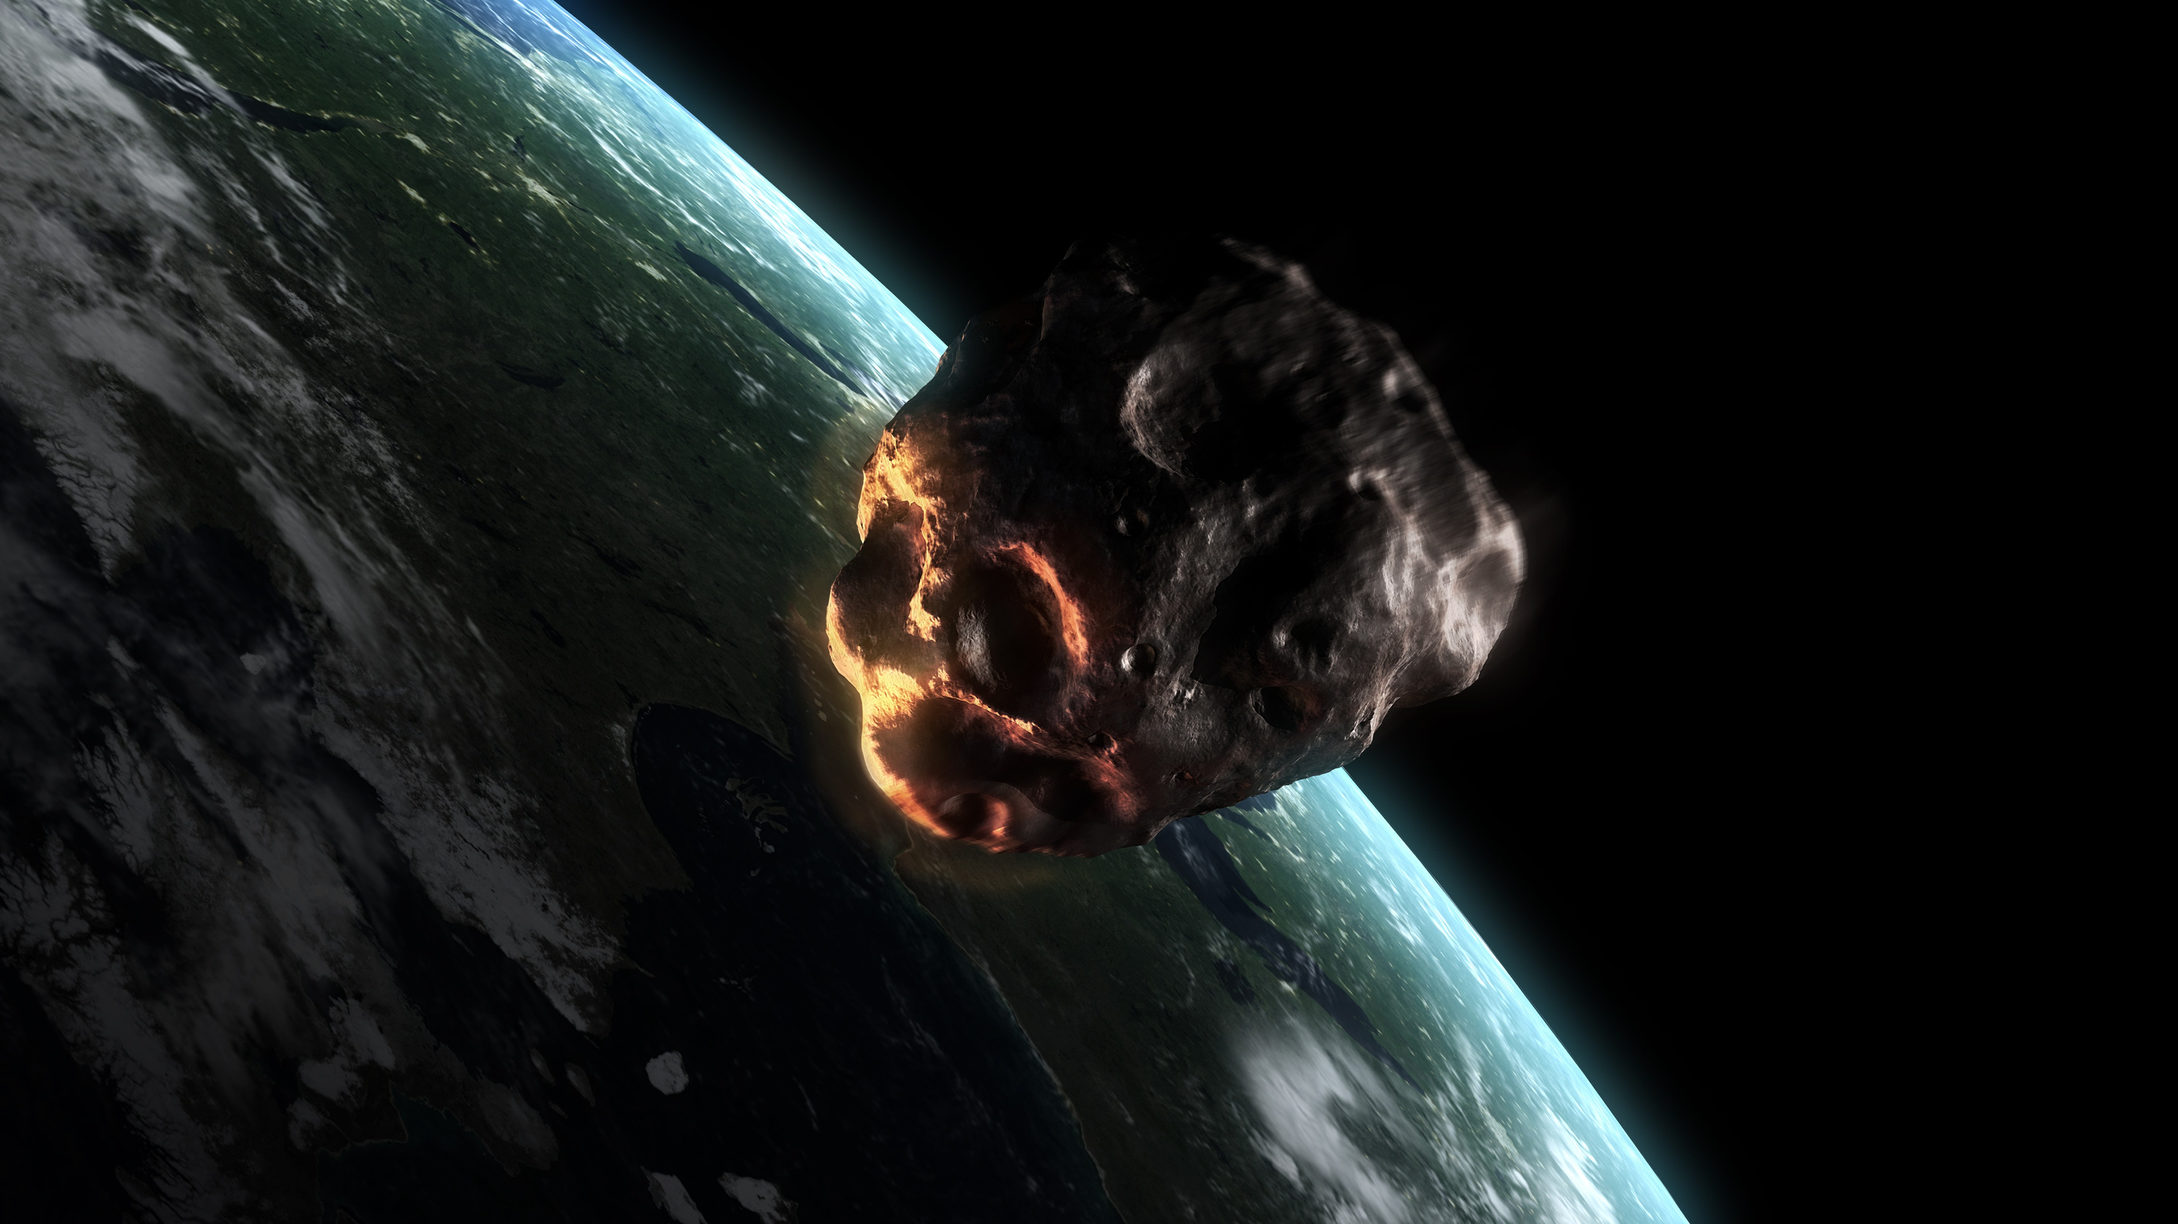 Elhalad a Föld mellett egy aszteroida